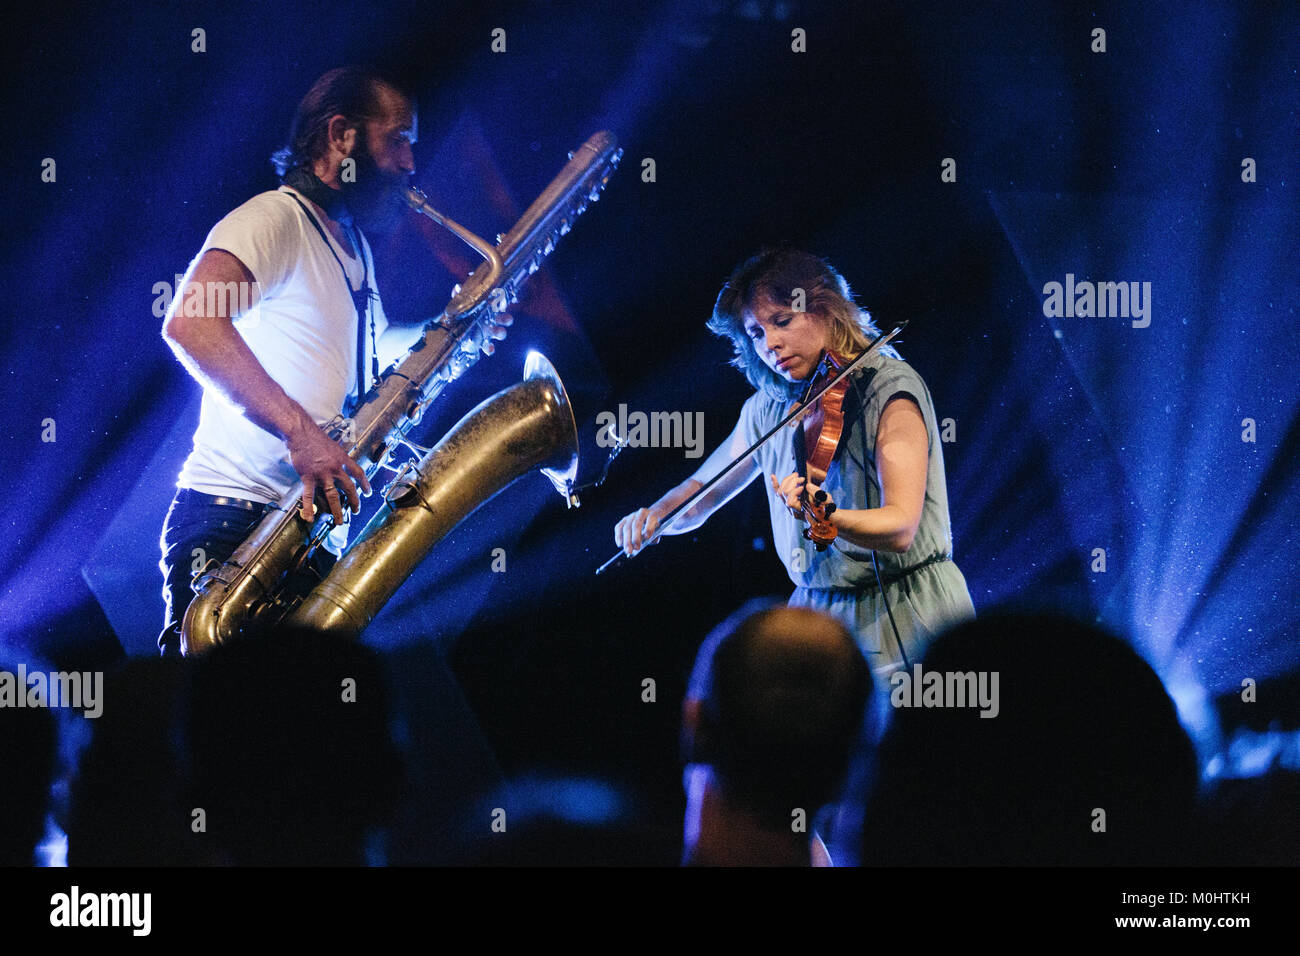 El dúo de música instrumental American-Canadian Colin Stetson y Sarah  Neufeld realiza un concierto en vivo en el festival de música danesa  Roskilde Festival 2016. El dúo está formado por el saxofonista